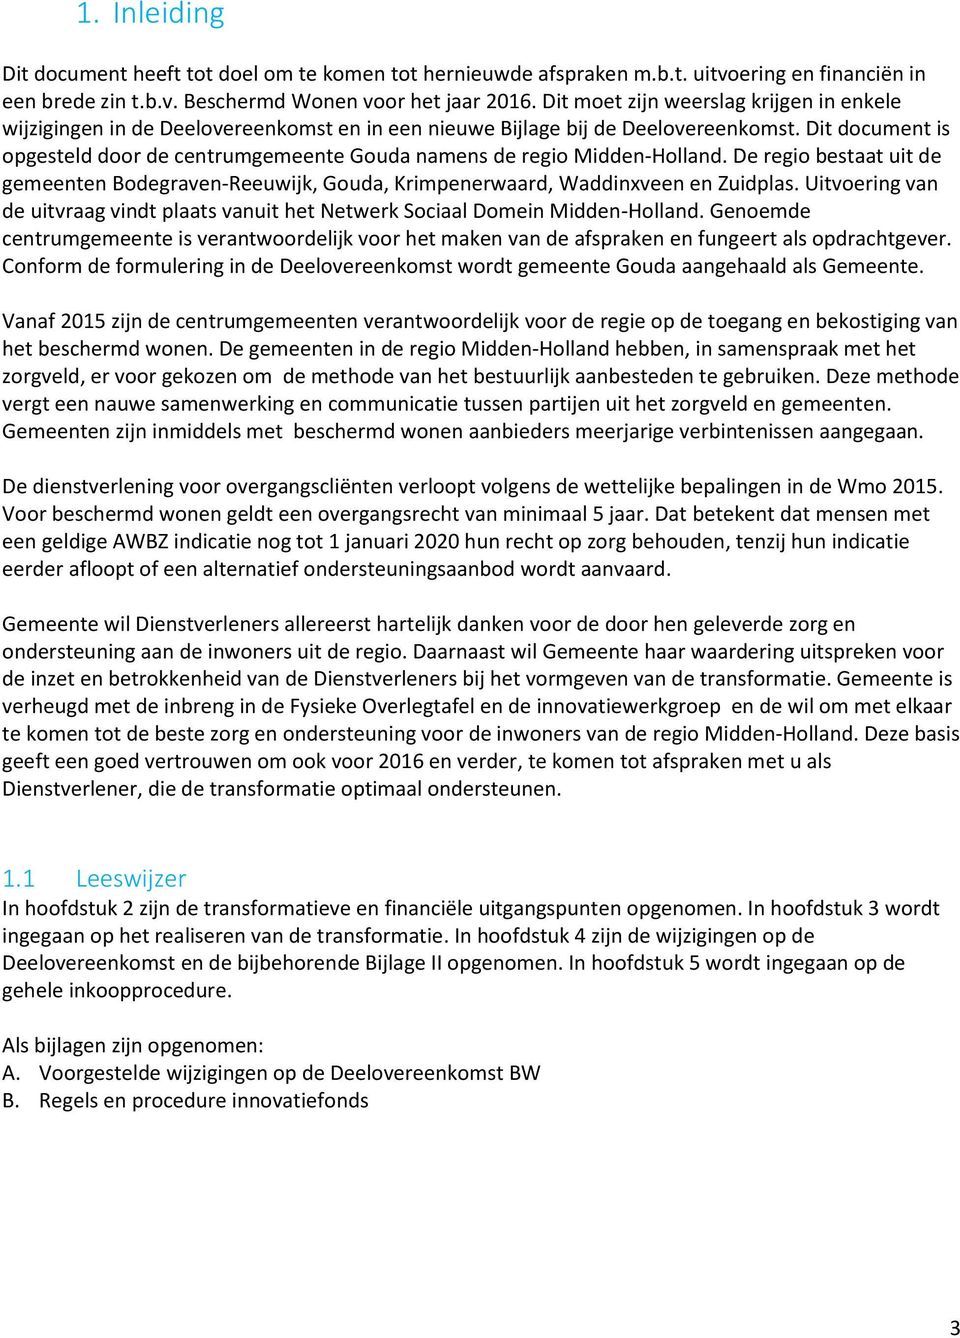 Dit document is opgesteld door de centrumgemeente Gouda namens de regio Midden-Holland. De regio bestaat uit de gemeenten Bodegraven-Reeuwijk, Gouda, Krimpenerwaard, Waddinxveen en Zuidplas.